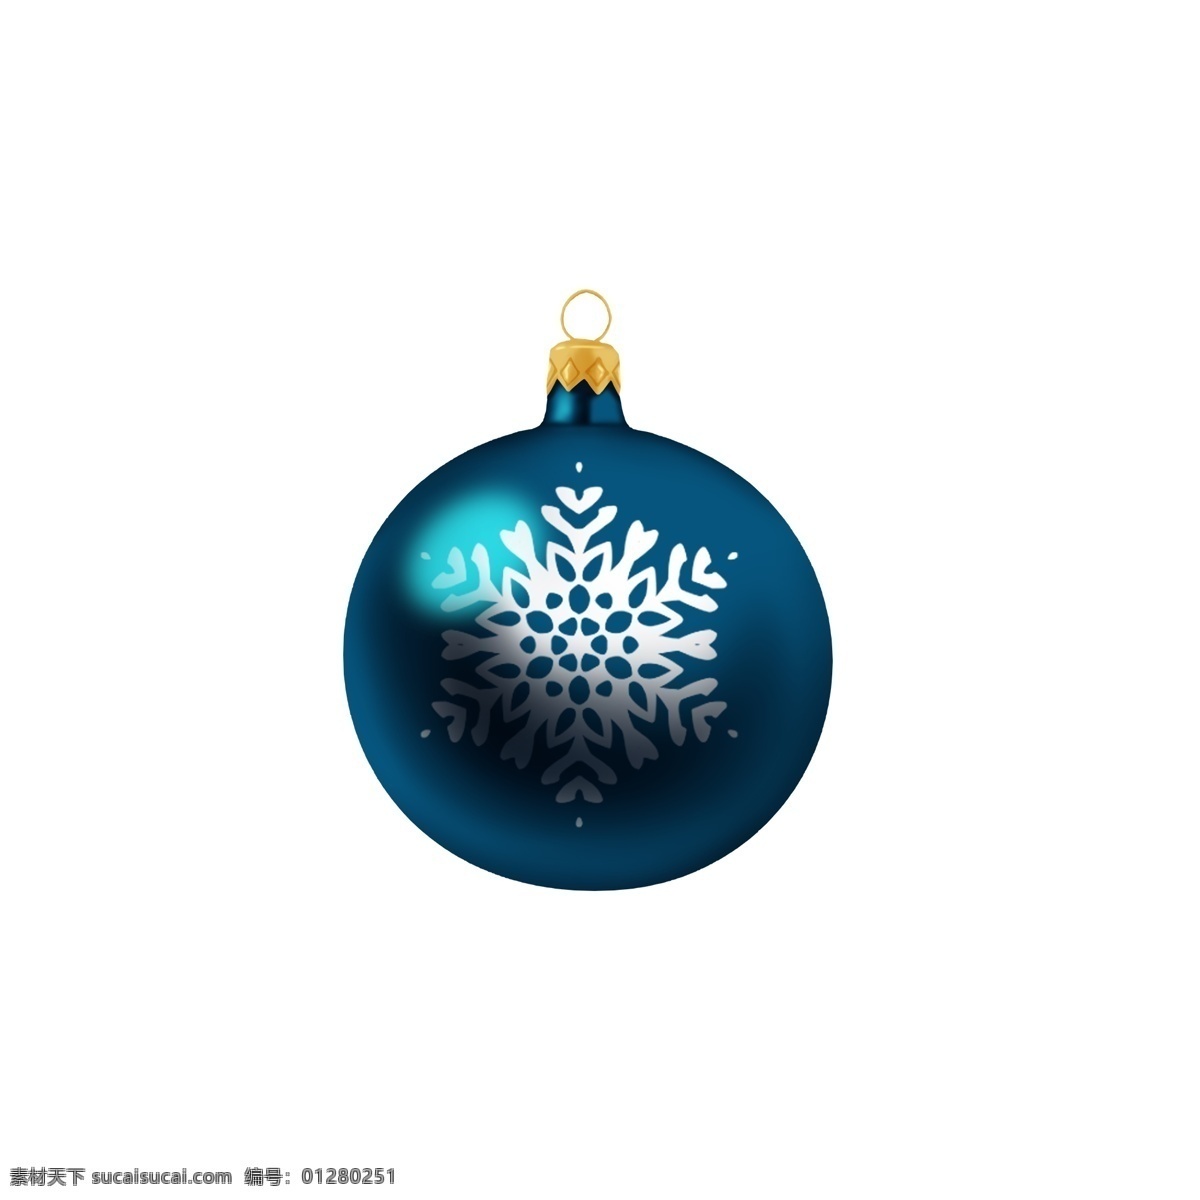 手绘 圣诞 装饰 球 蓝色 雪花 创意 商用 元素 圣诞节 可爱 手绘风 平安夜 白色 写实 配图 可商用